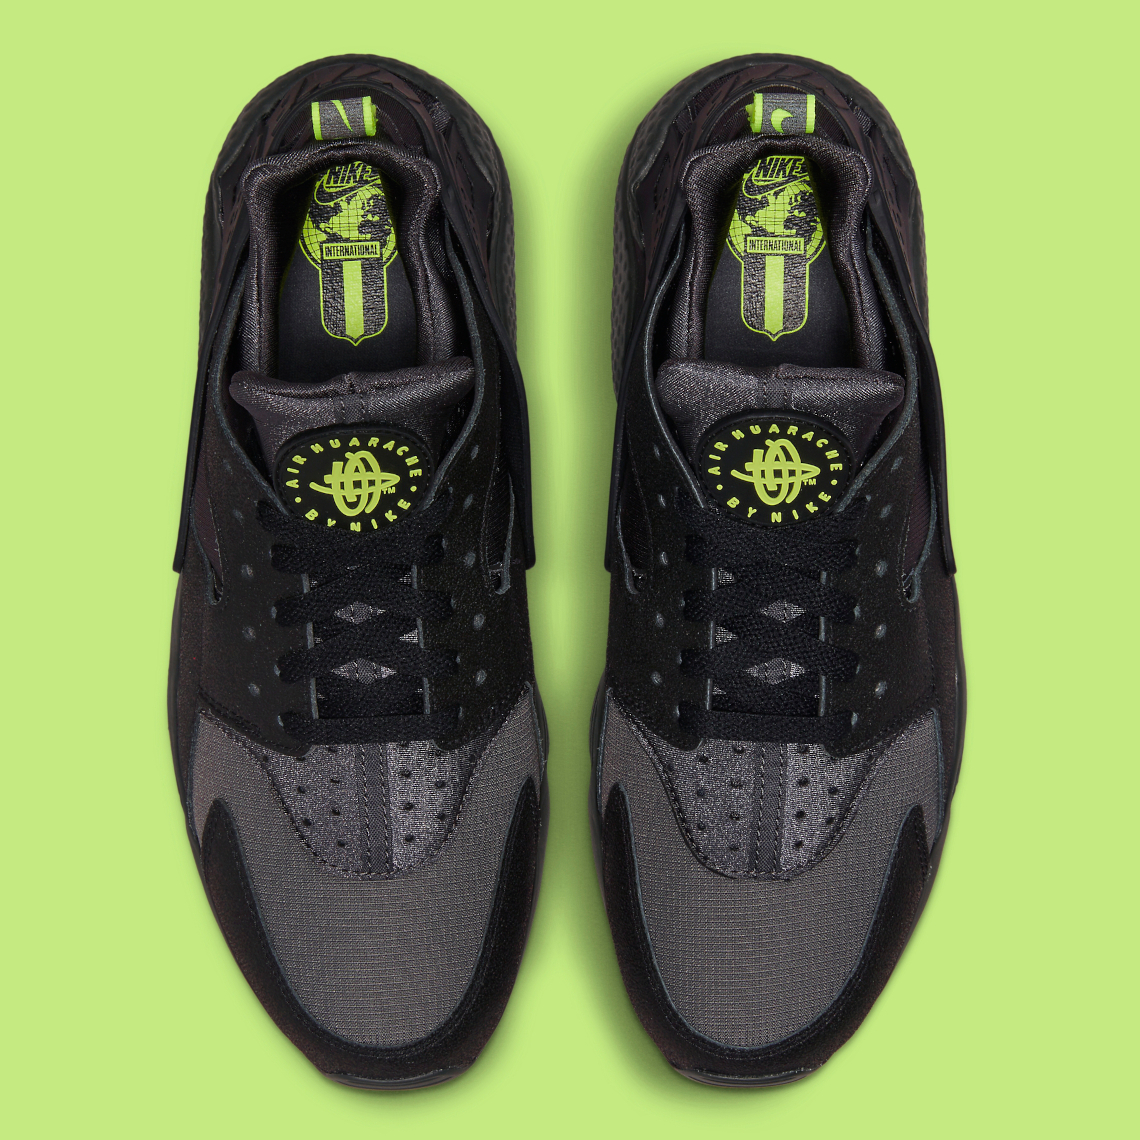 Doorweekt hoesten Vlieger Nike Air Huarache "Black/Volt" DZ4499-001 | SneakerNews.com